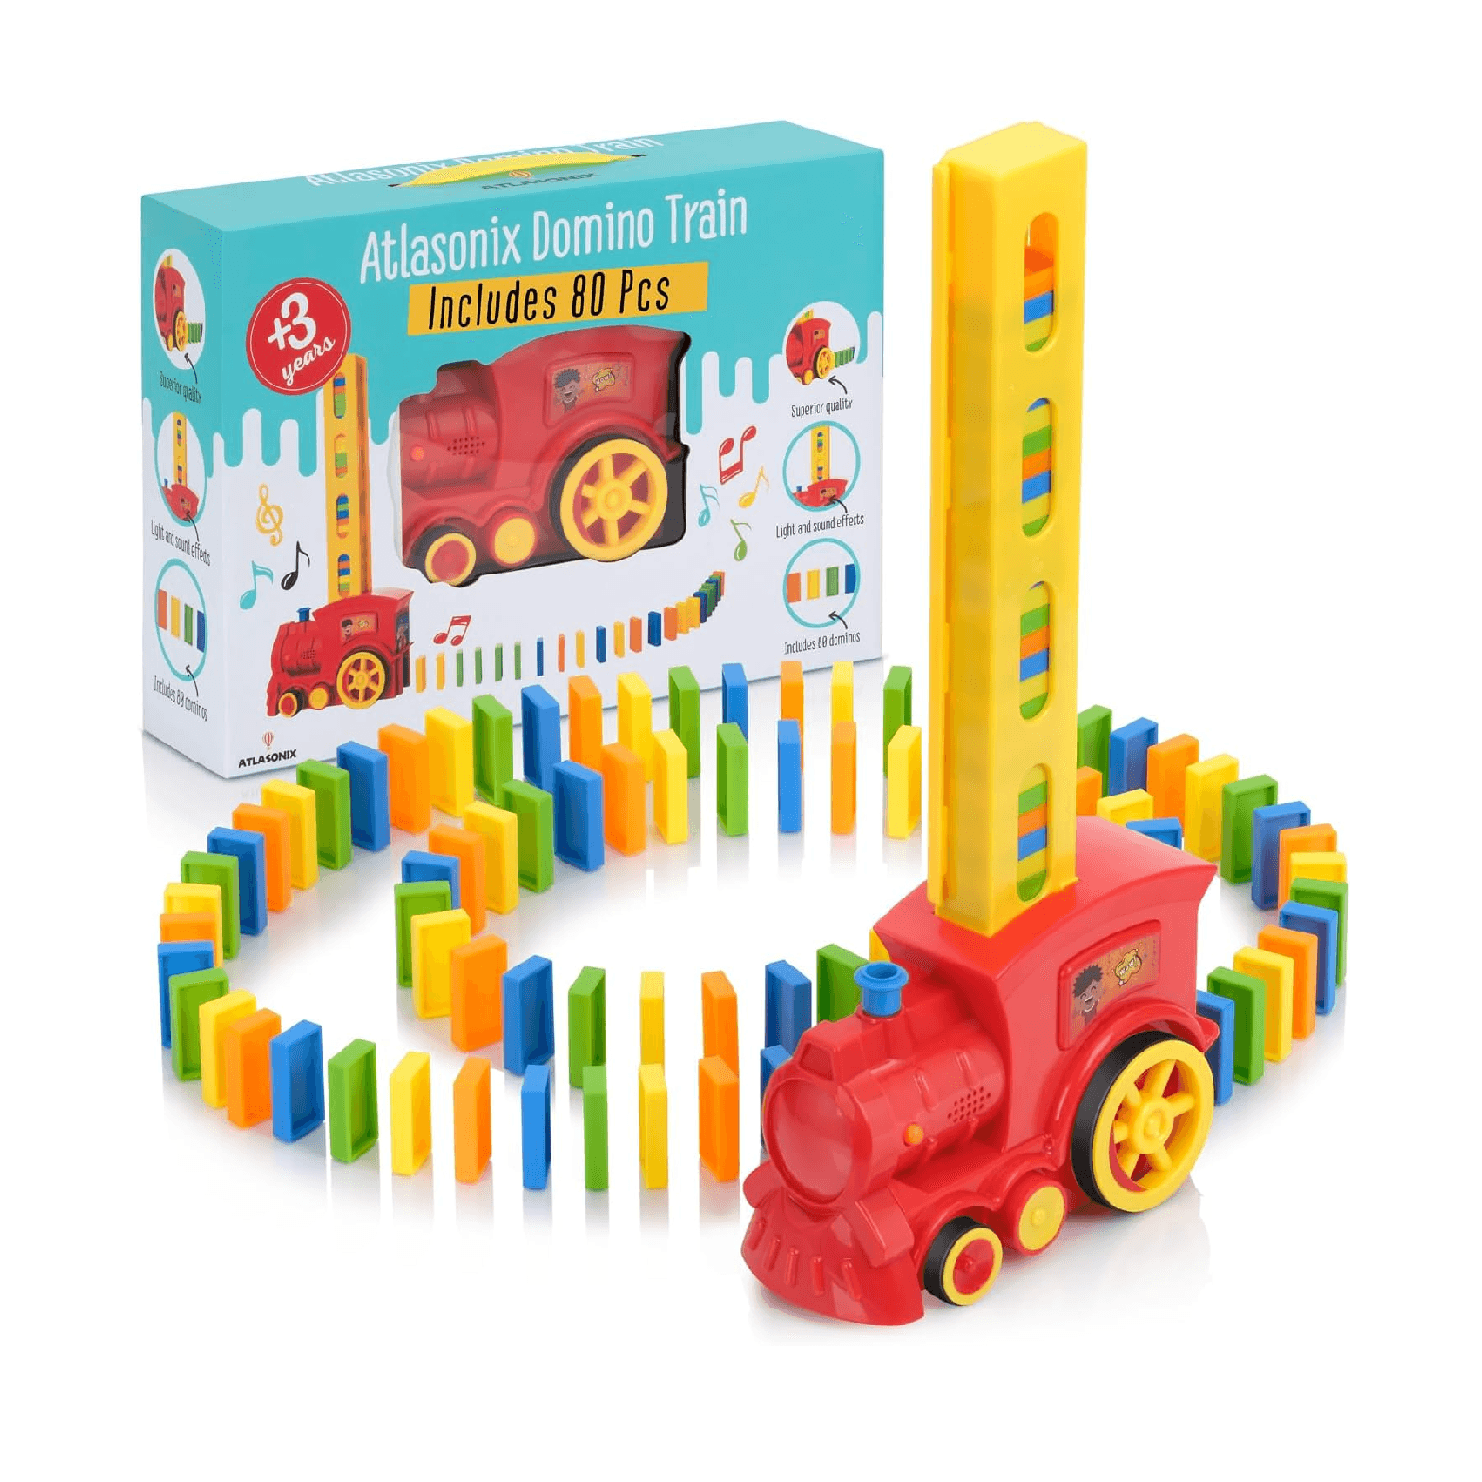 Montessori Atlasonix Domino Games With Train 80 Pieces